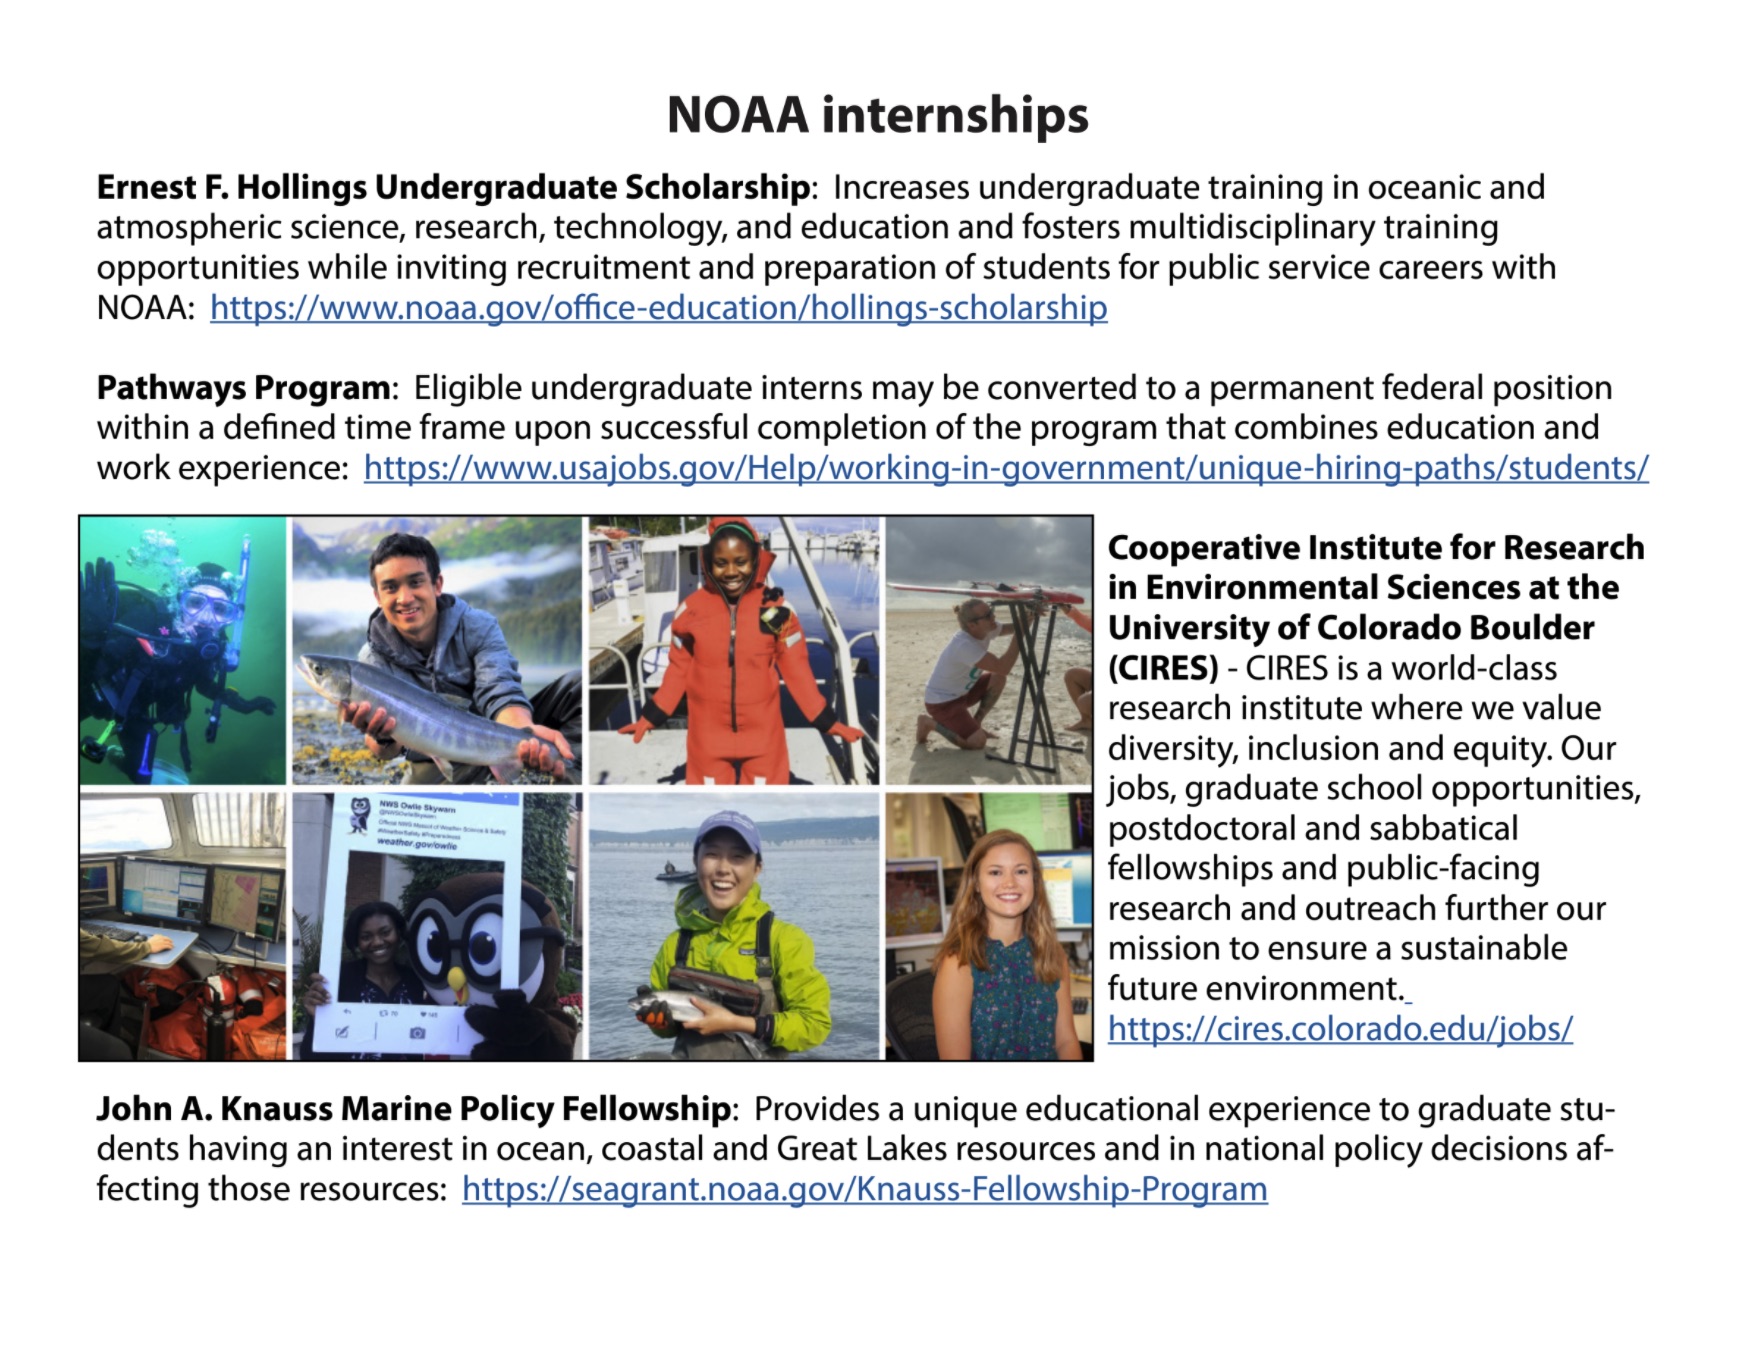 NOAA Internships